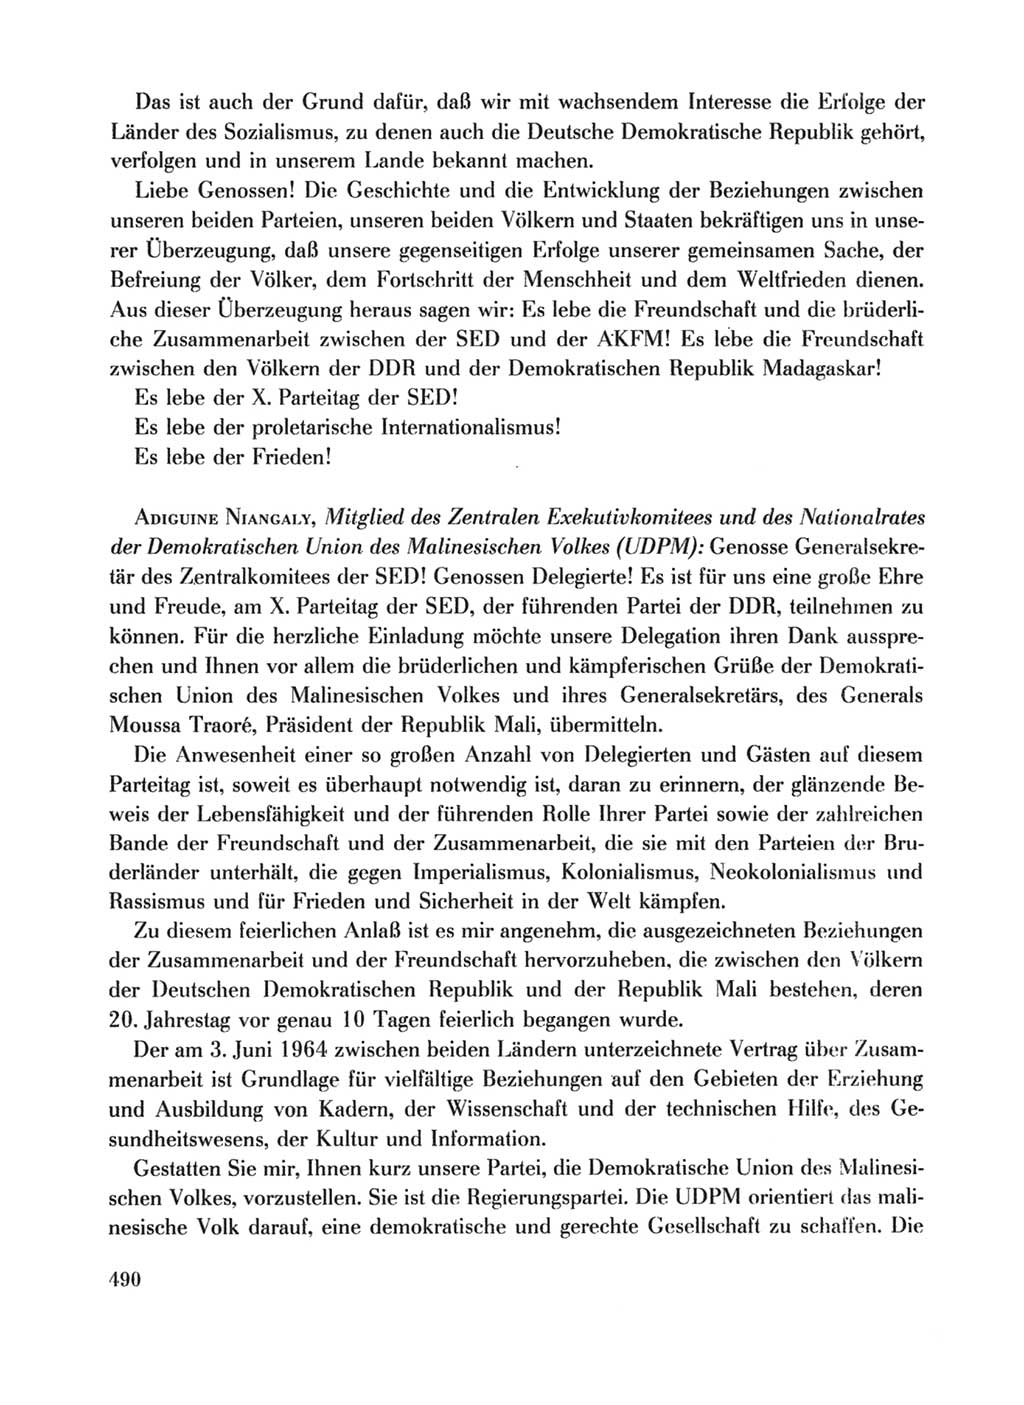 Protokoll der Verhandlungen des Ⅹ. Parteitages der Sozialistischen Einheitspartei Deutschlands (SED) [Deutsche Demokratische Republik (DDR)] 1981, Band 1, Seite 490 (Prot. Verh. Ⅹ. PT SED DDR 1981, Bd. 1, S. 490)